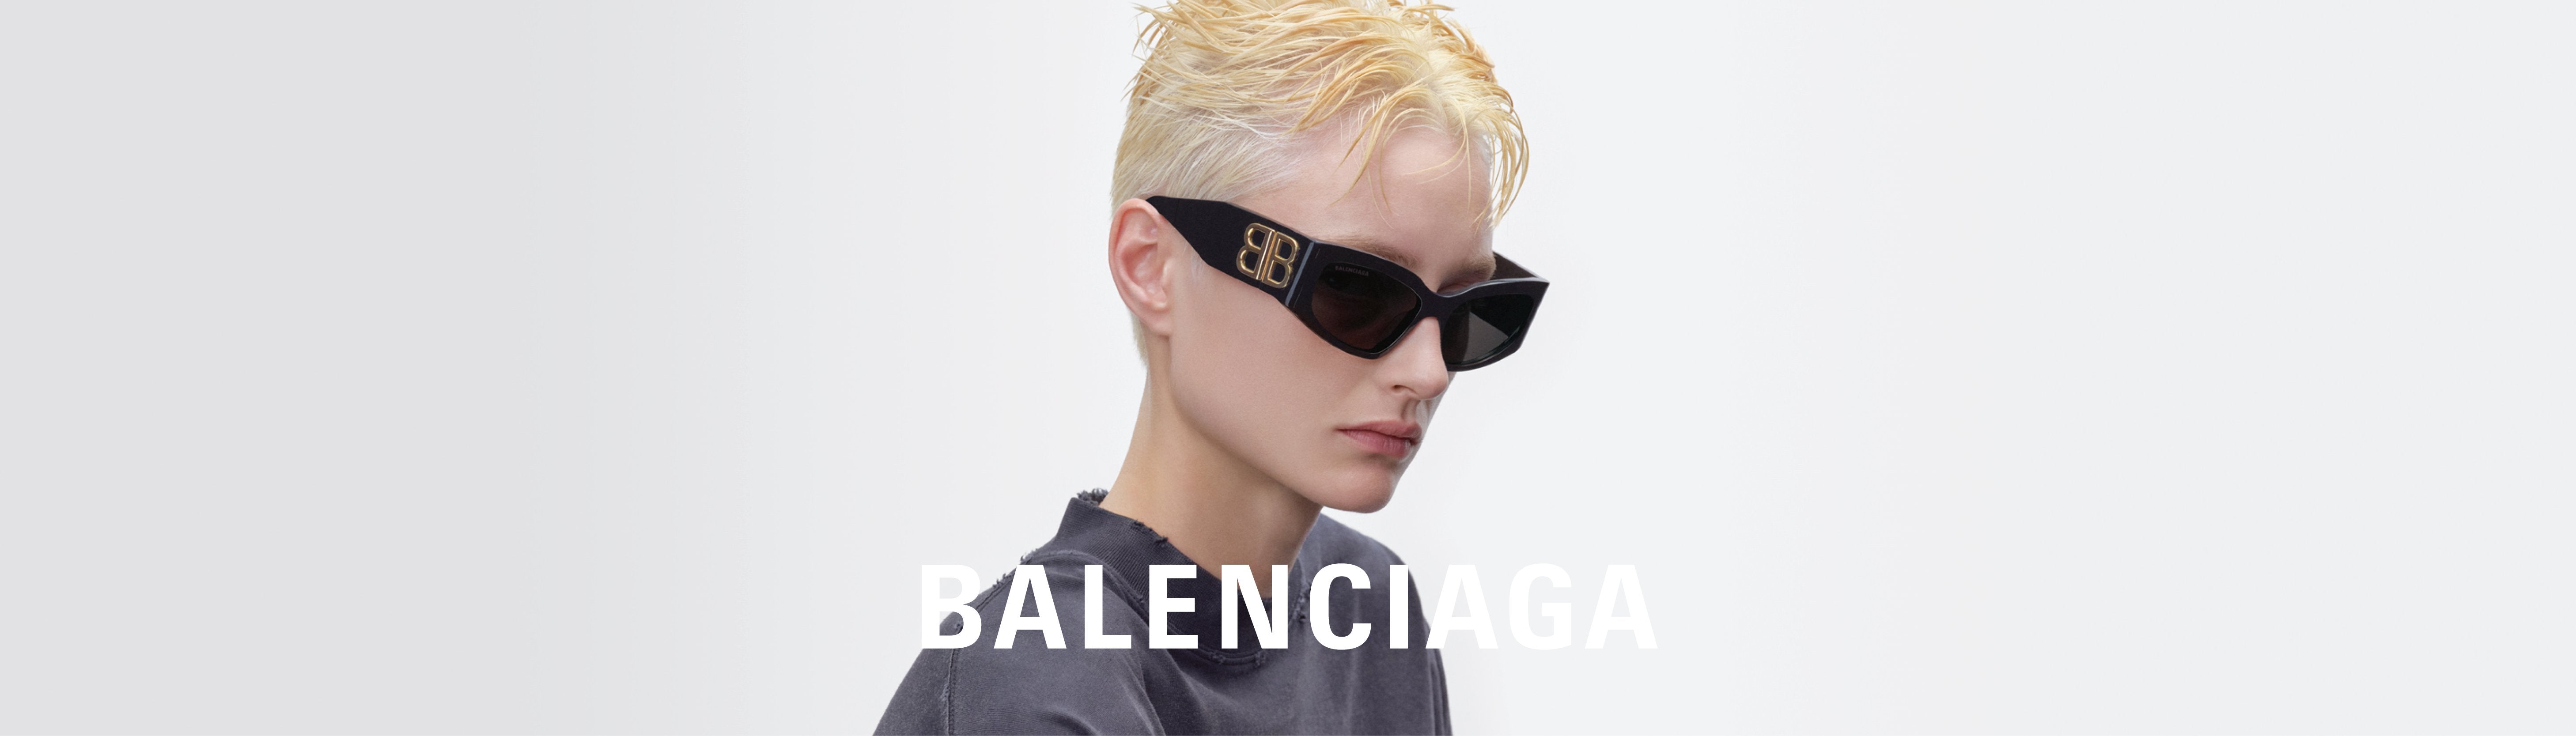 Balenciaga: French luxe brand Balenciaga launches 'fully-destroyed